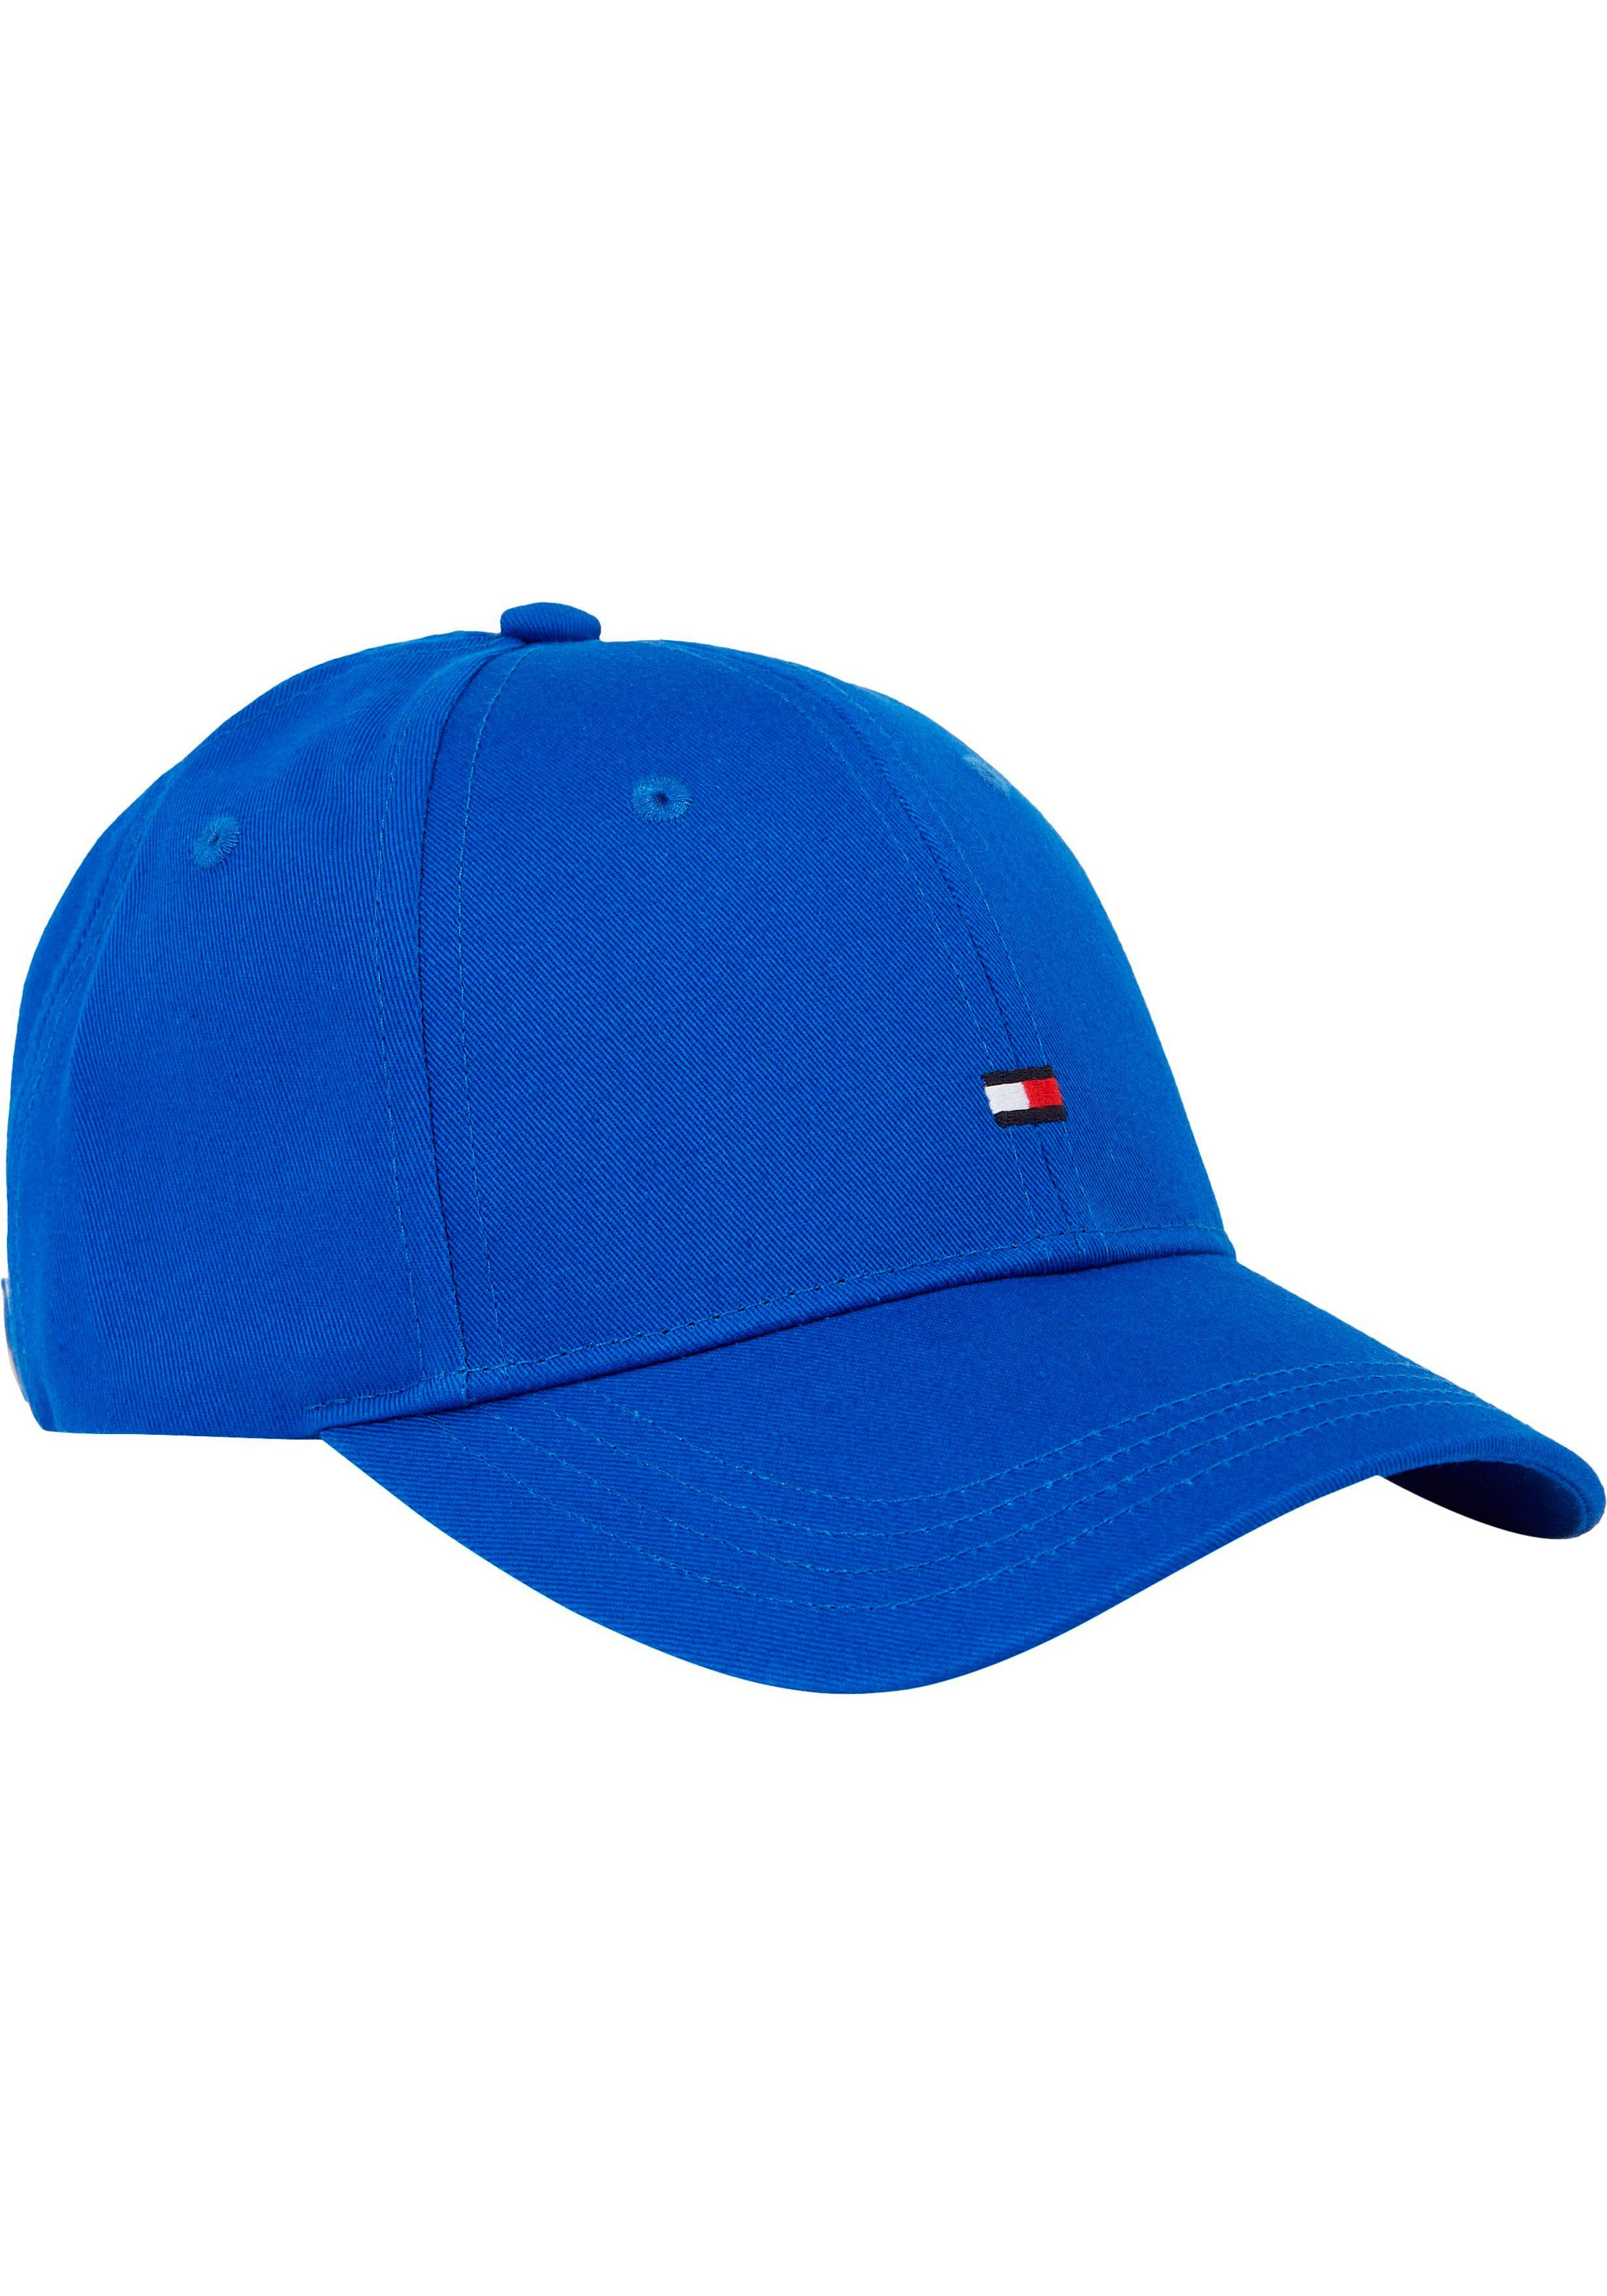 FLAG CAP Klemmverschluss Blue Hilfiger SMALL Fitted Tommy mit Cap Ultra